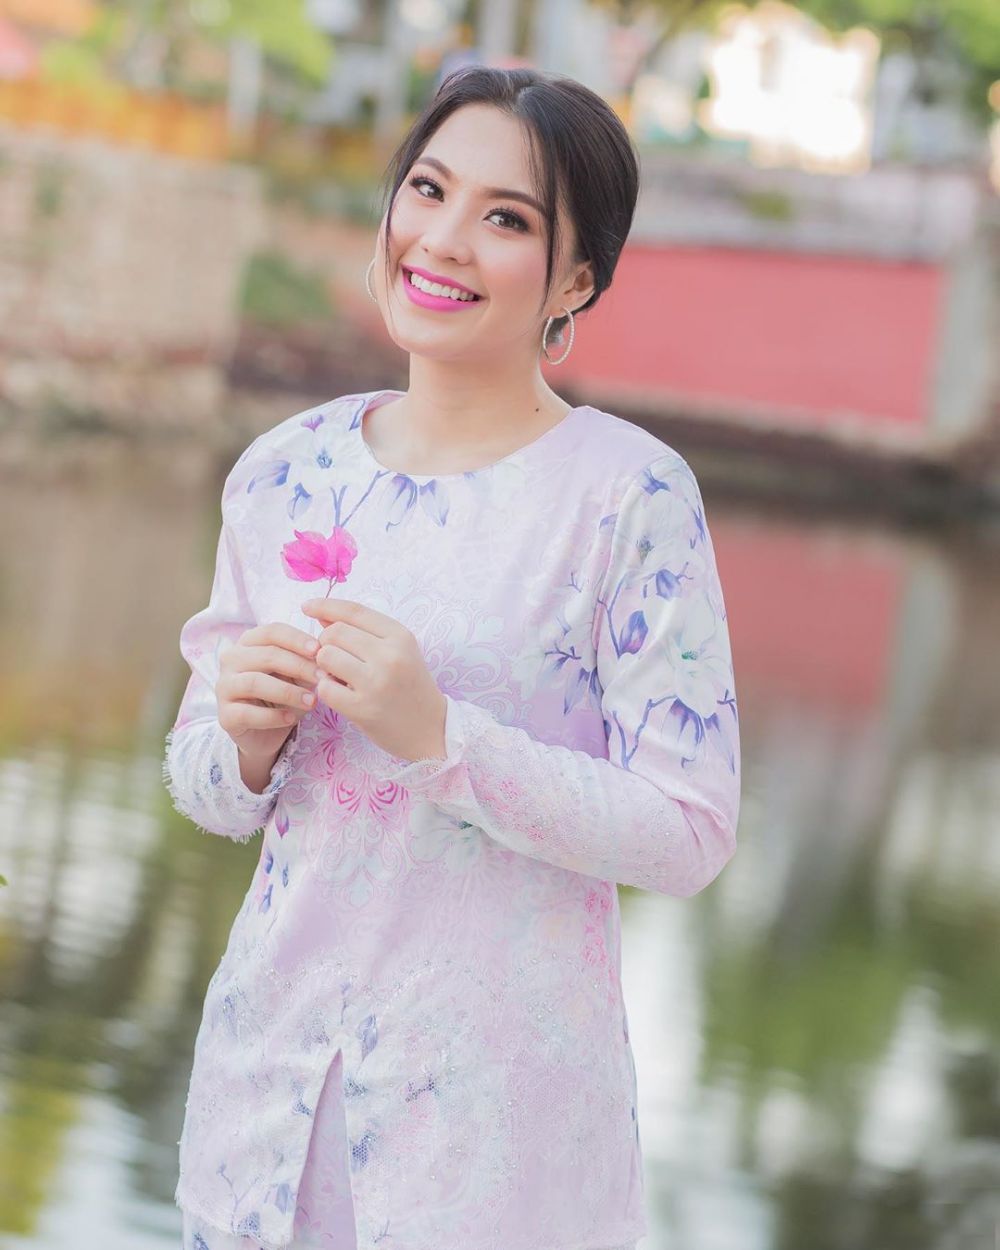 6 Pesona Janna Nick, artis Malaysia dapat ucapan ultah dari Baim Wong